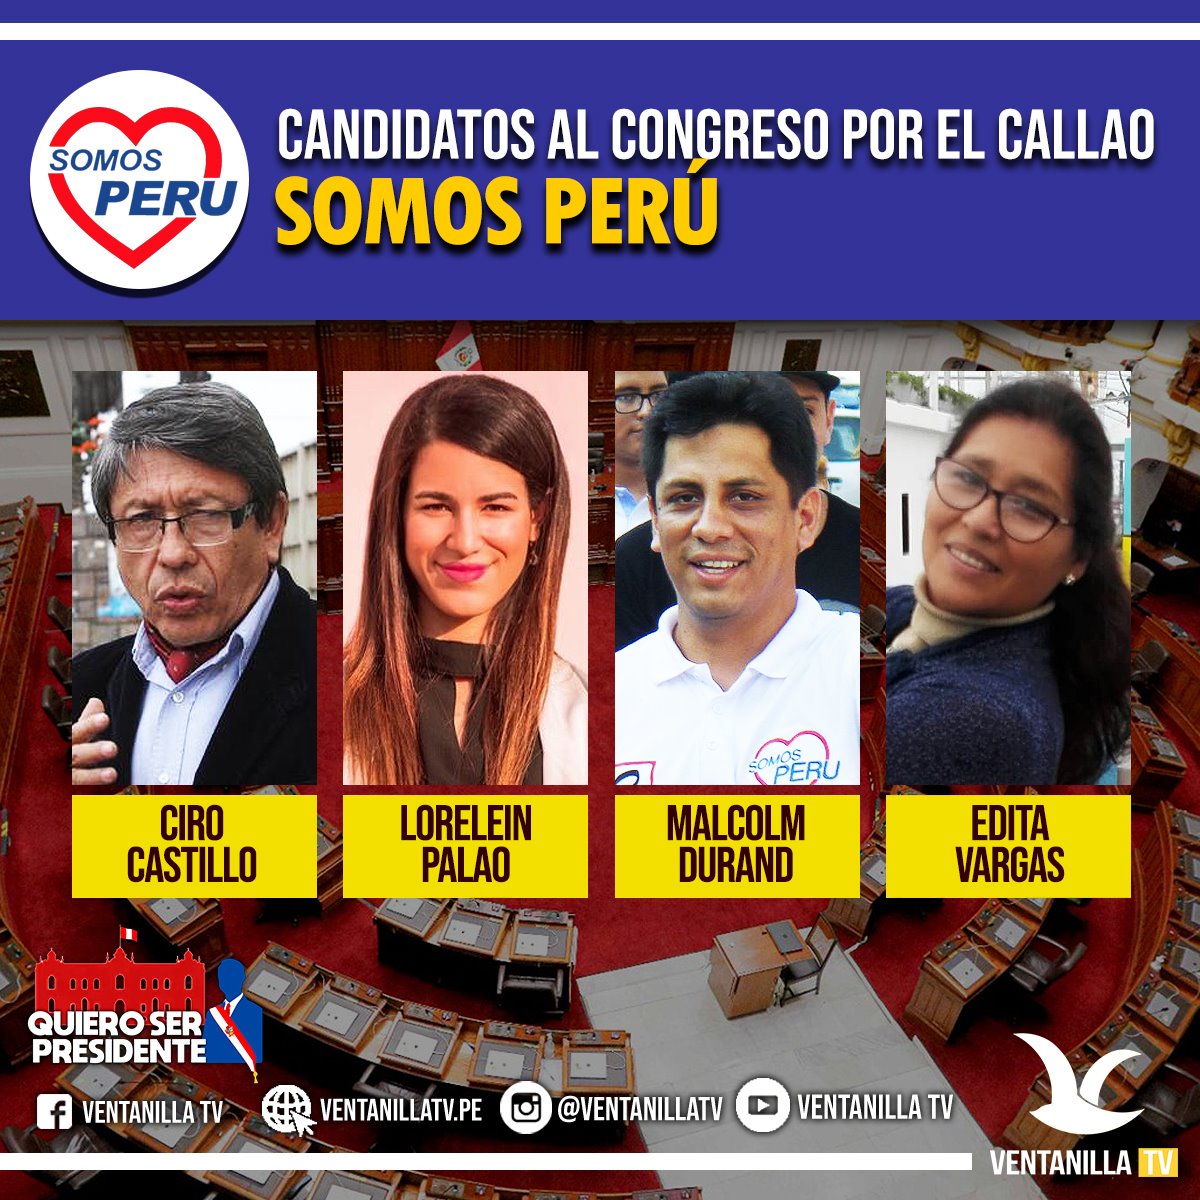 Conozca A Los Candidatos Al Congreso De La RepÚblica 2021 Ventanilla Tv 8633